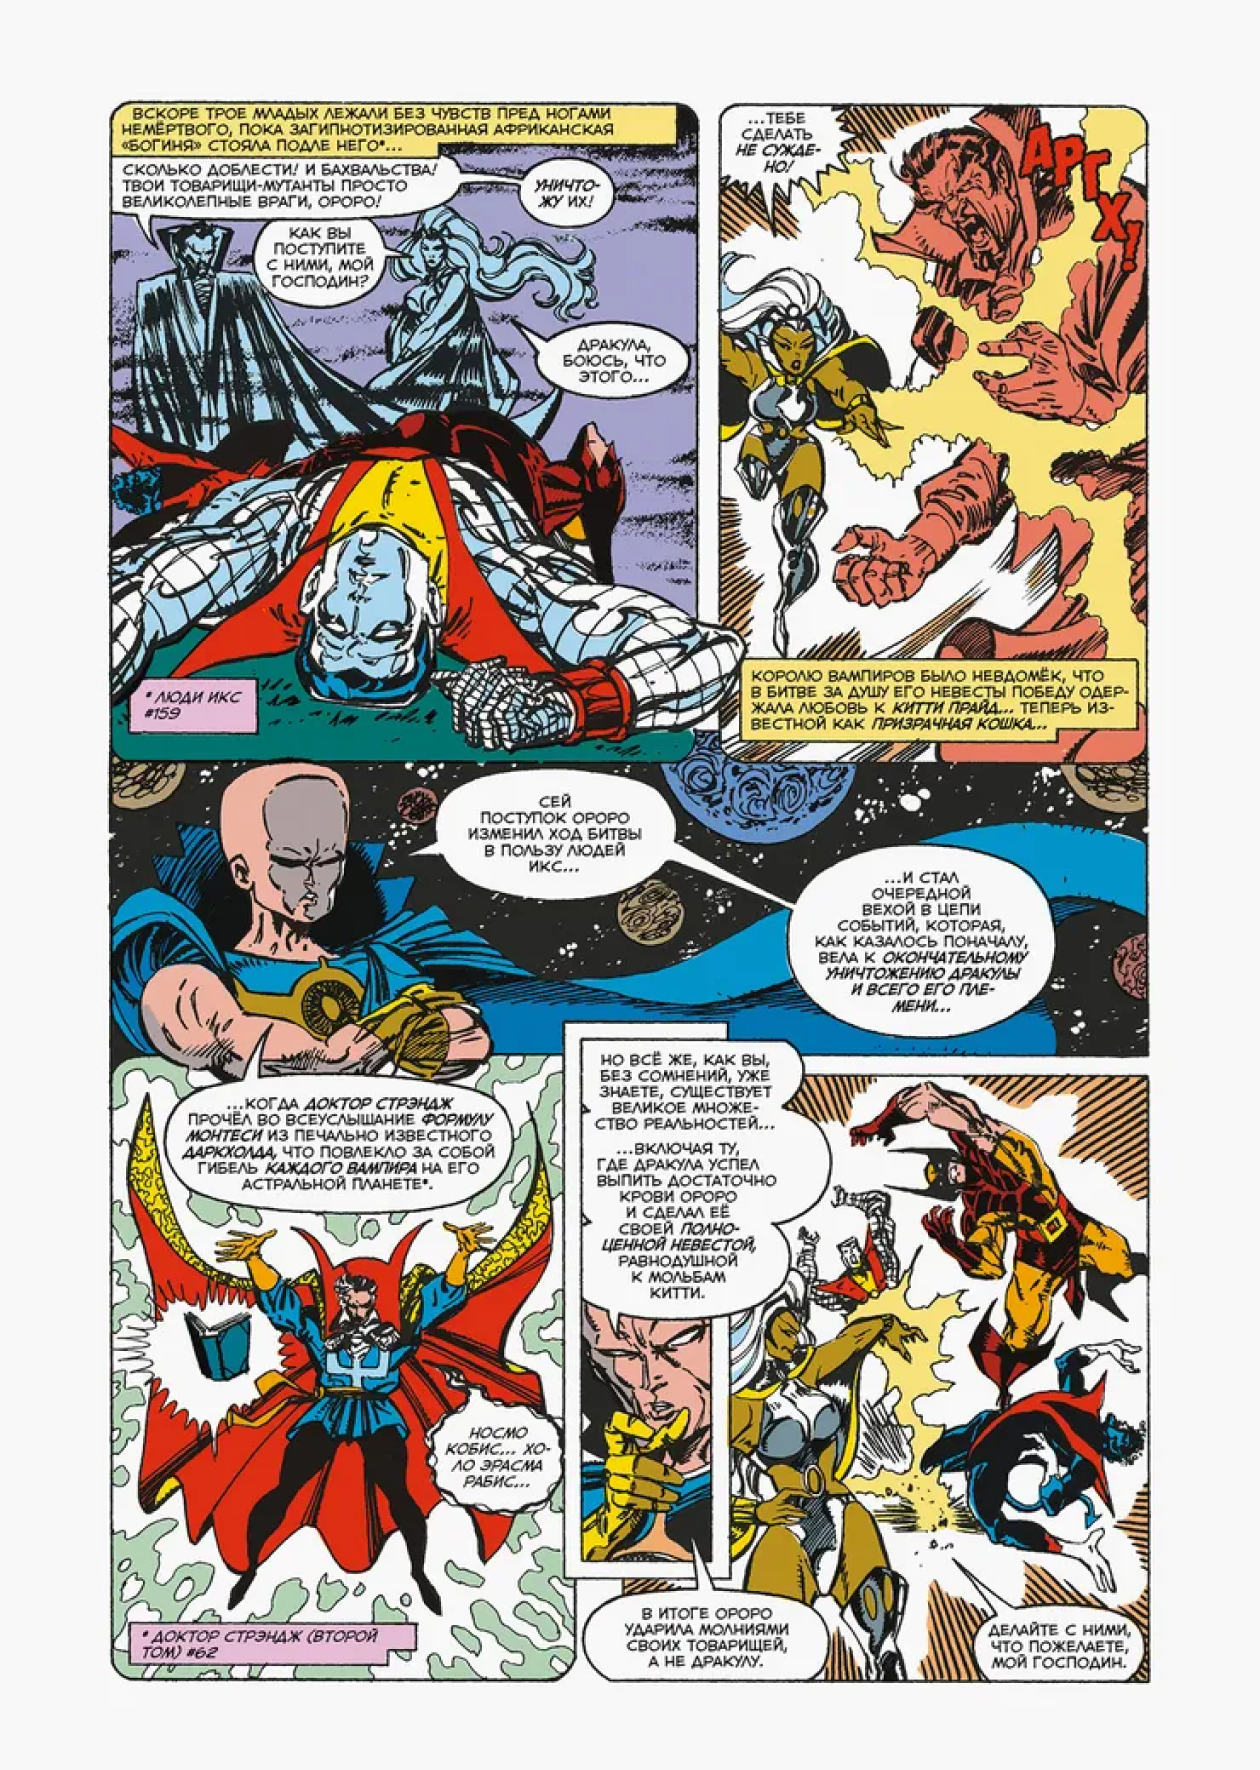 Люди Икс не раз сталкивались с вампирами на страницах комиксов. В актуальных историях Marvel даже проходит масштабный кроссовер, где Мстители, Люди Икс и другие супергерои сражаются с армией кровососов. Источник: «Комфедерация»